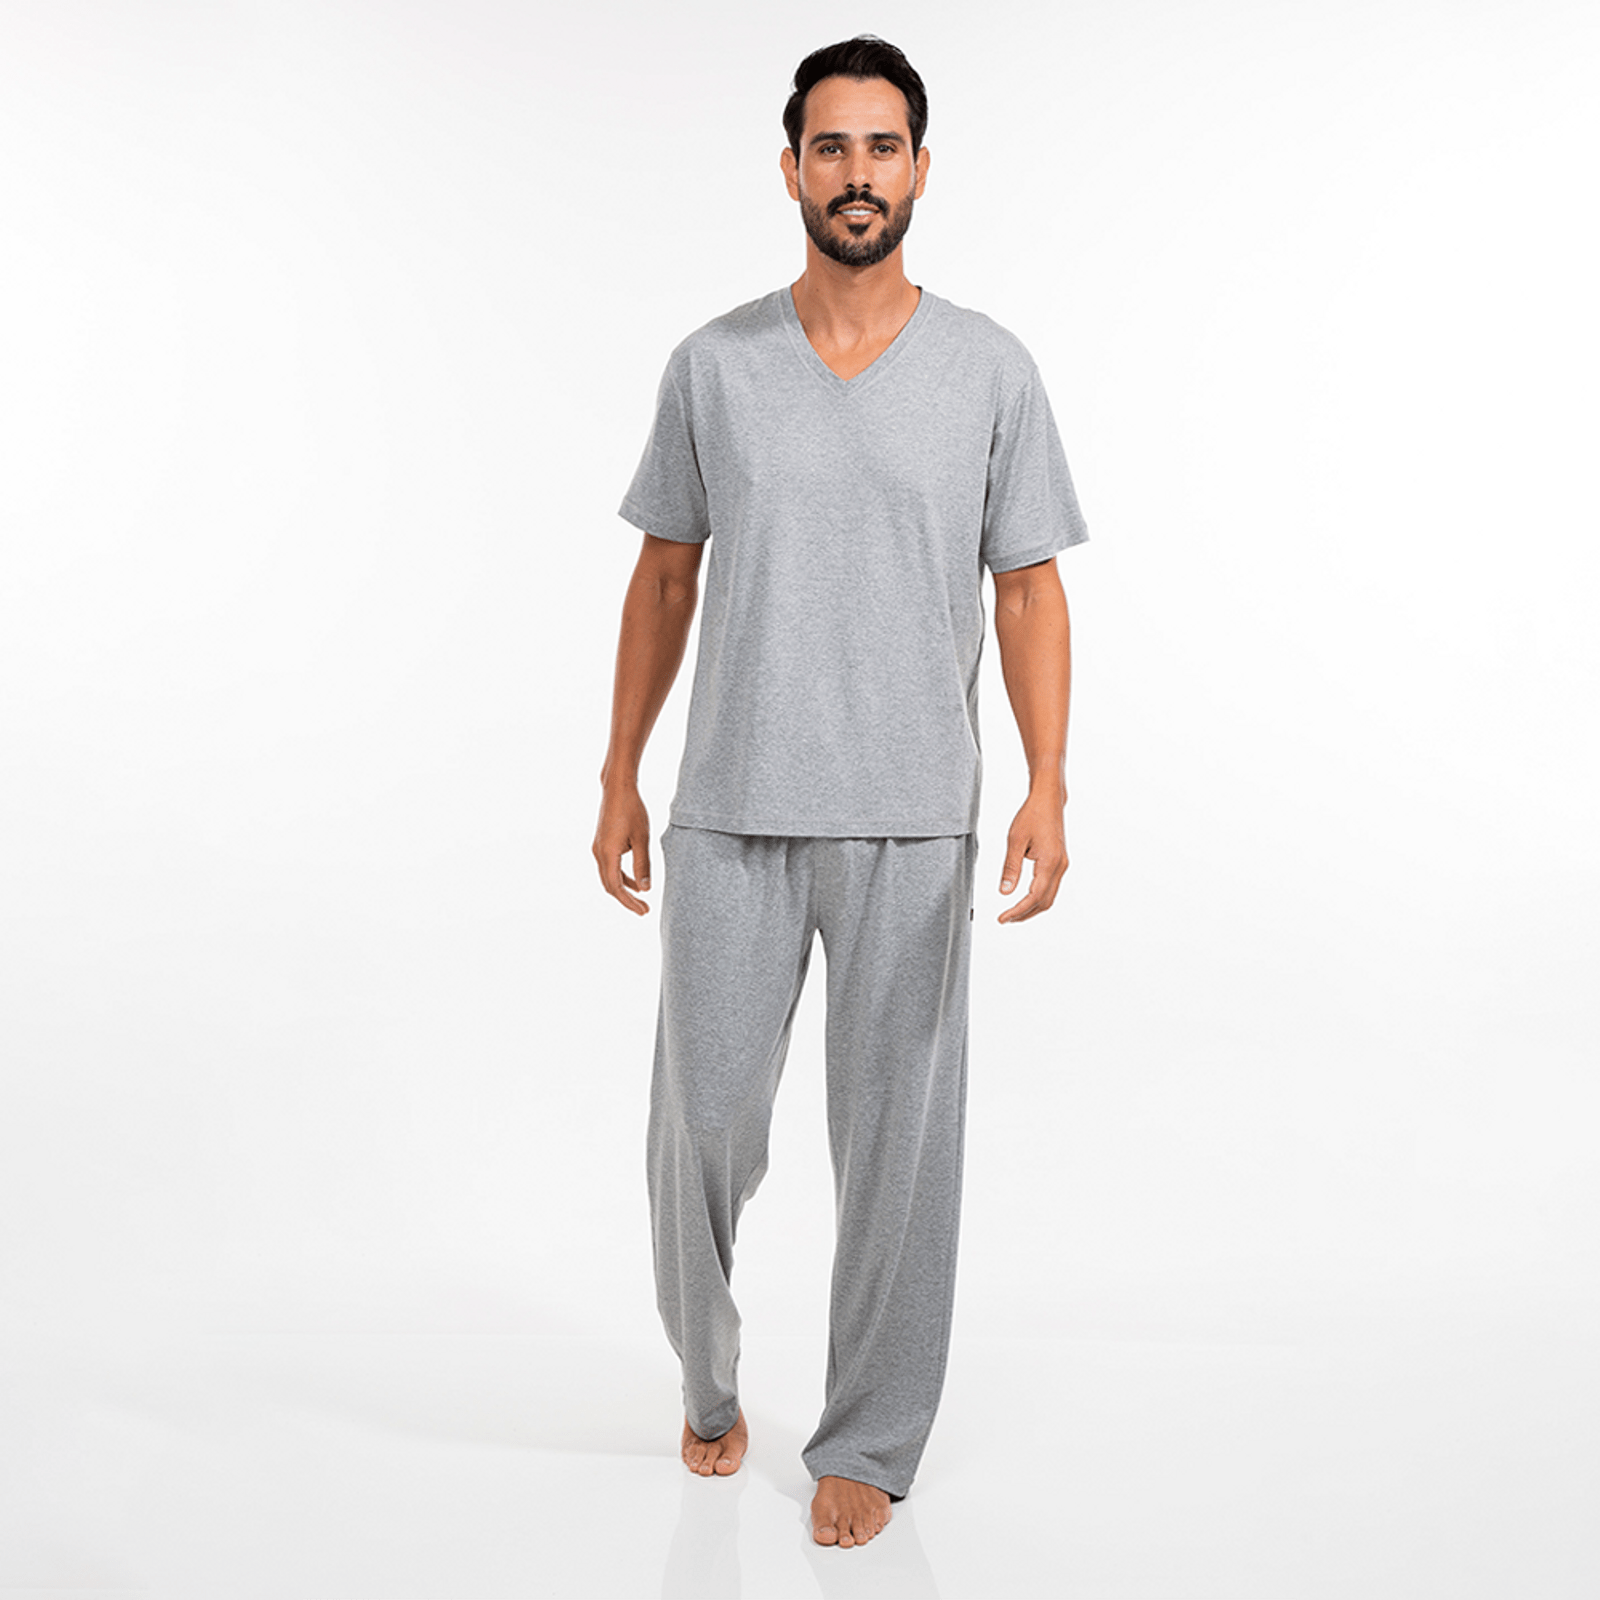 Pijama Masculino da cor Cinza. Calça com bolsos laterais e amarração e Blusa manga curta com formato em gola V.